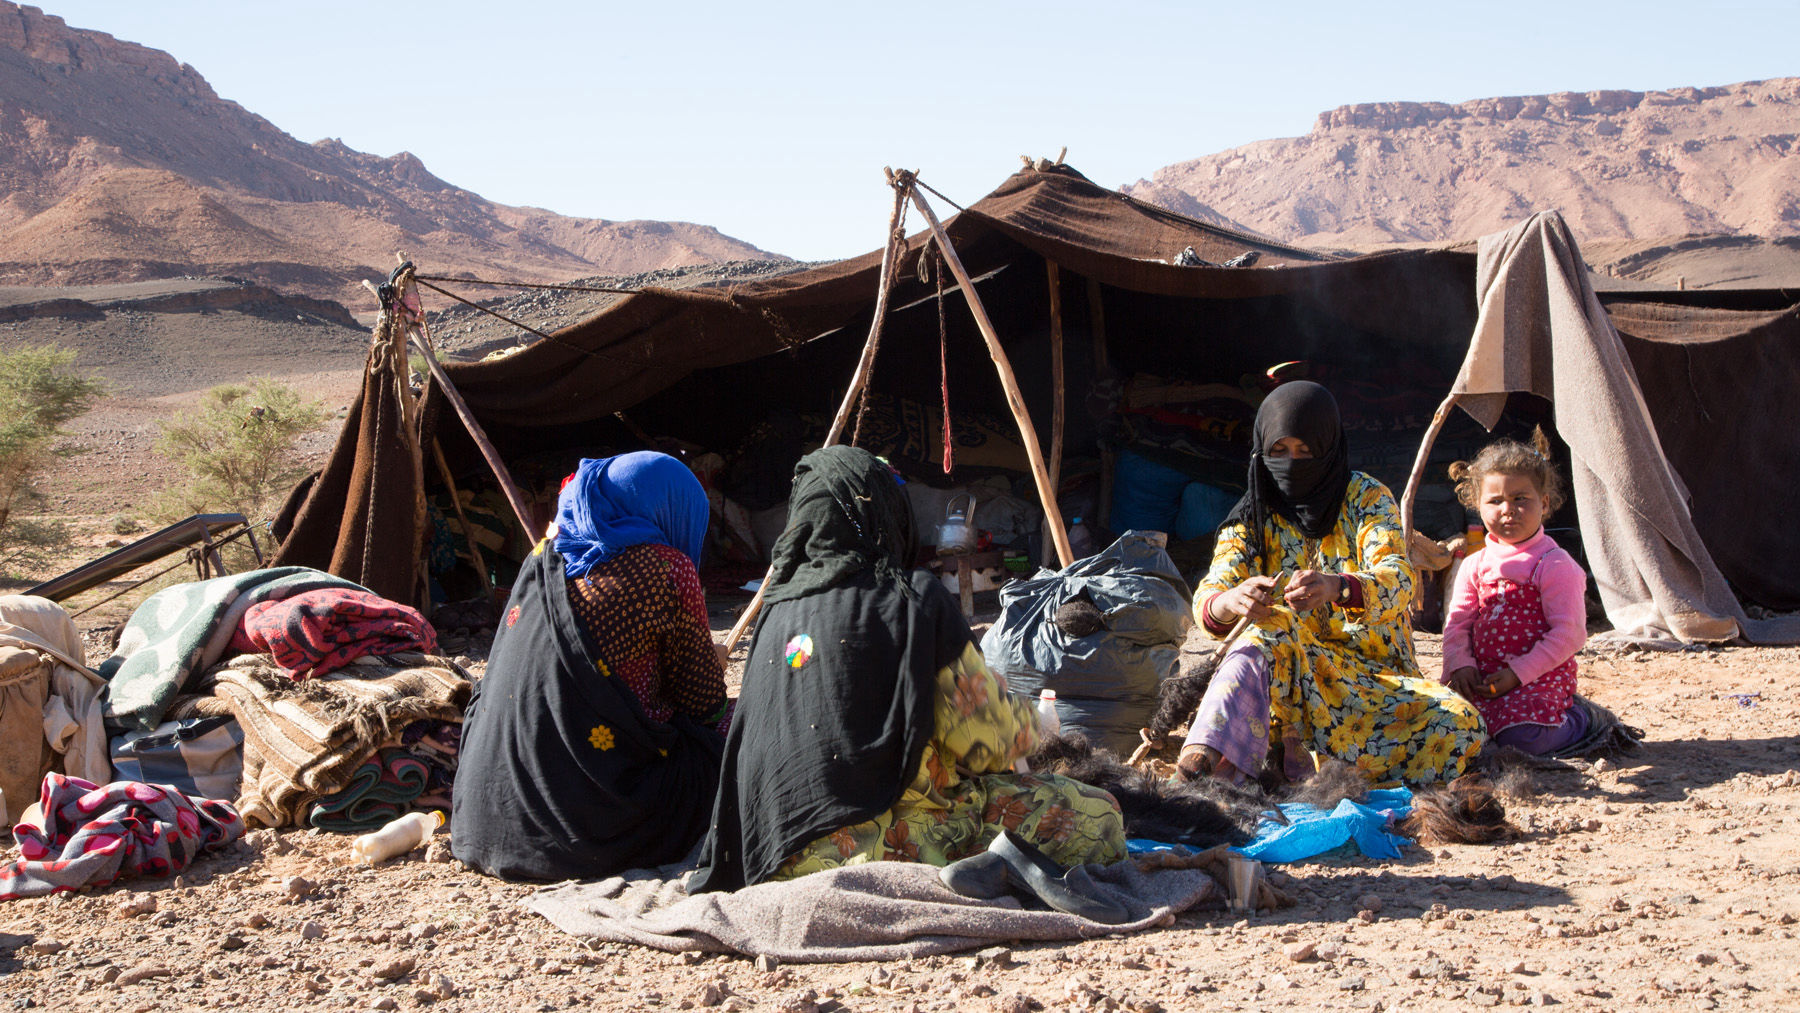 Berber Tents in Morocco